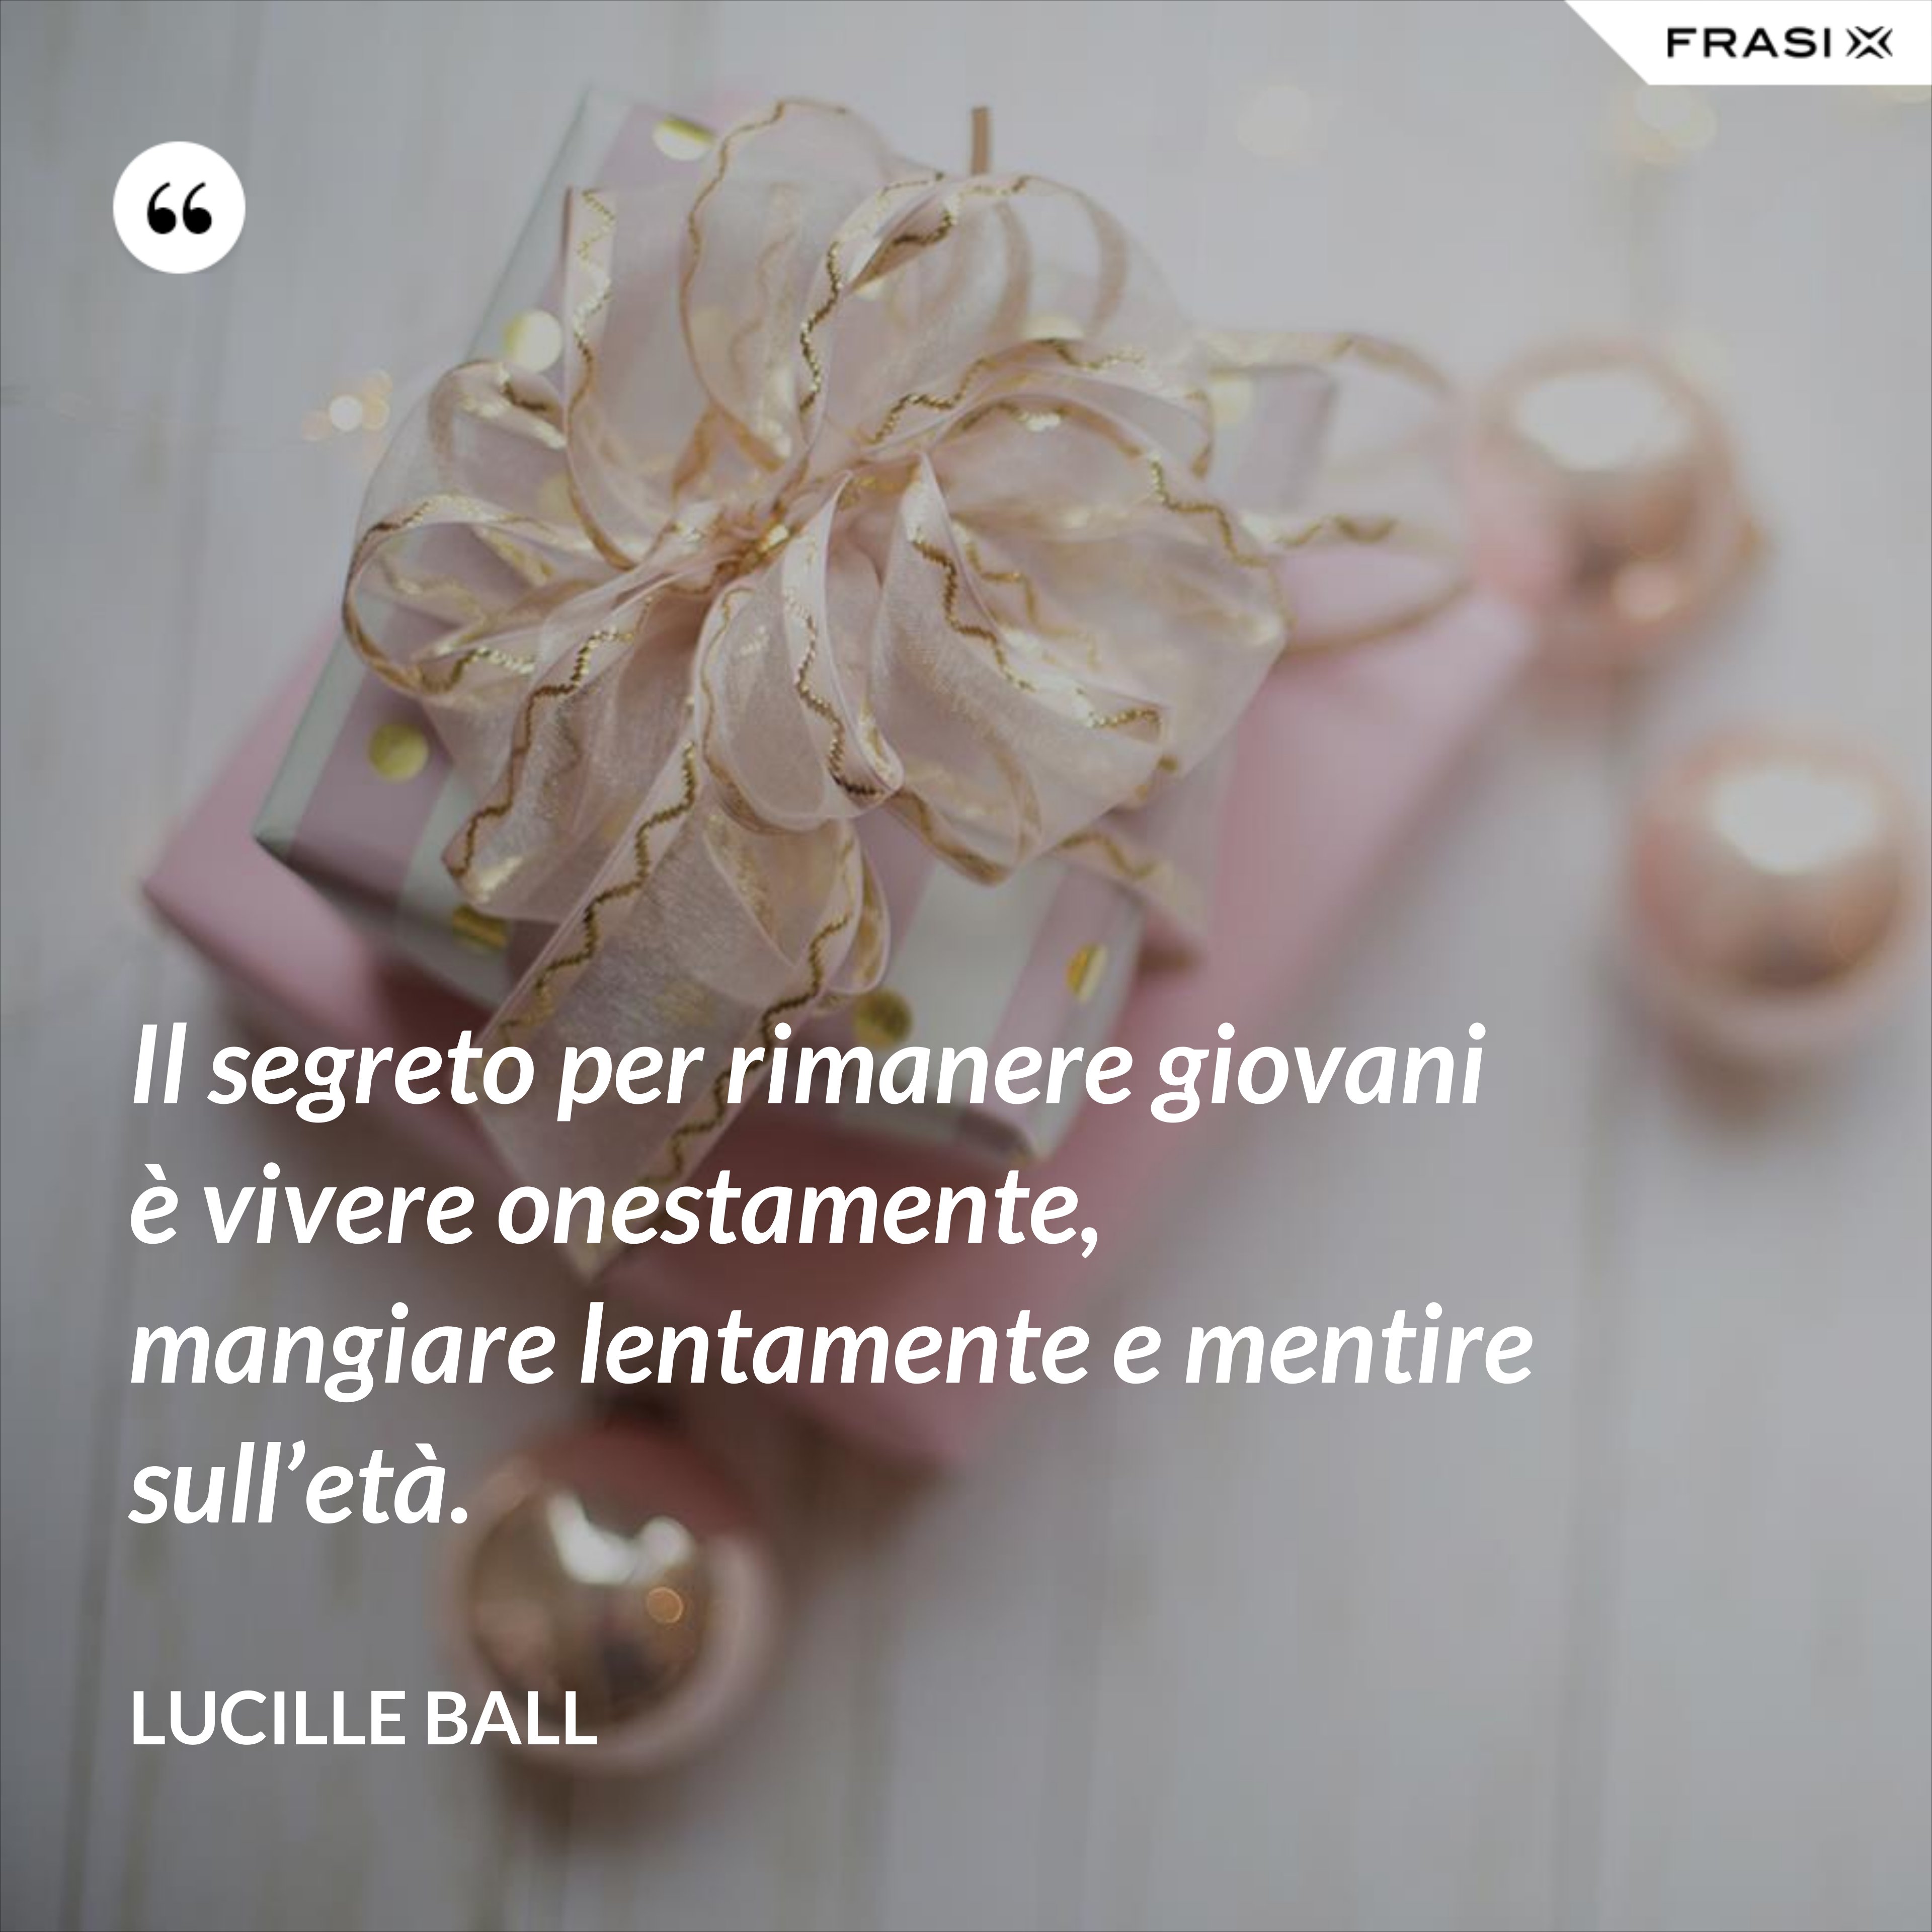 Il segreto per rimanere giovani è vivere onestamente, mangiare lentamente e mentire sull’età. - Lucille Ball